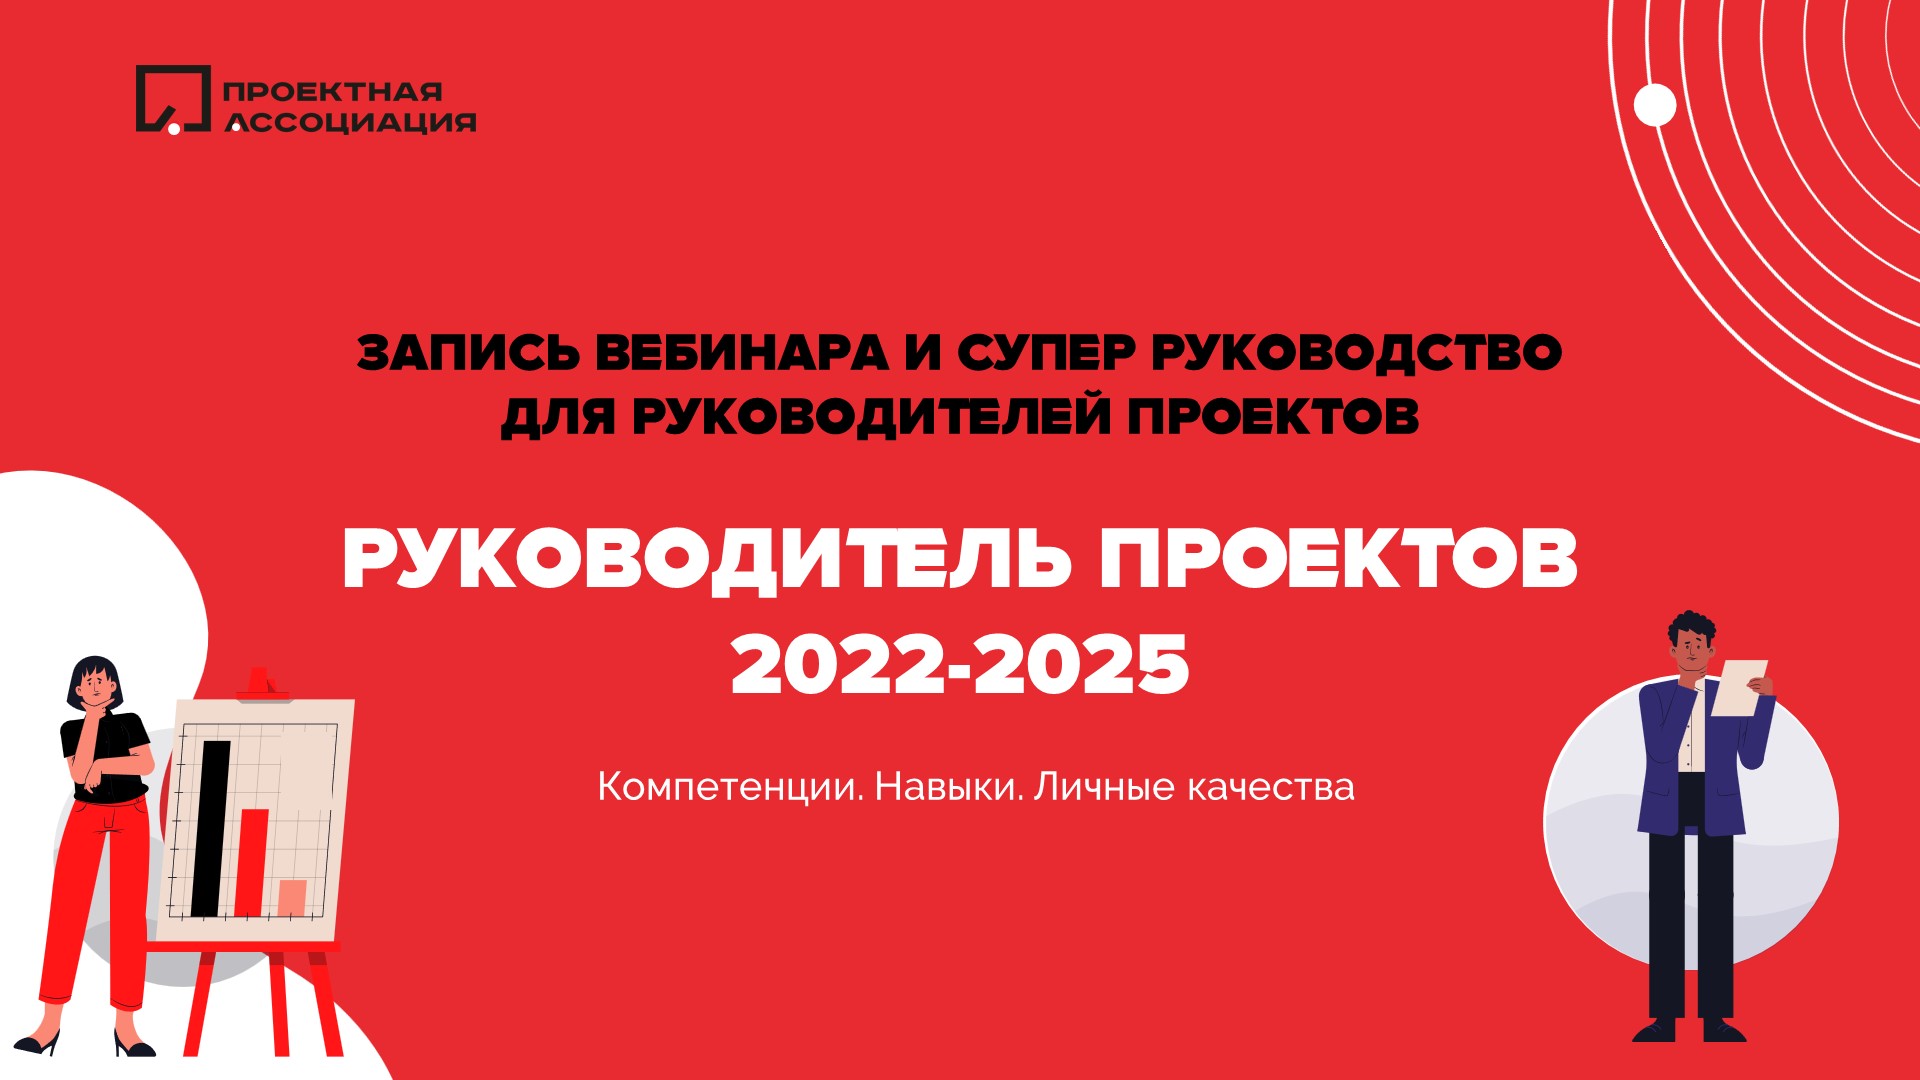 Онлайн конференция. Руководитель проекта в 2022-2025: какой он? Навыки, компетенции и личные качества, 27.10.2021